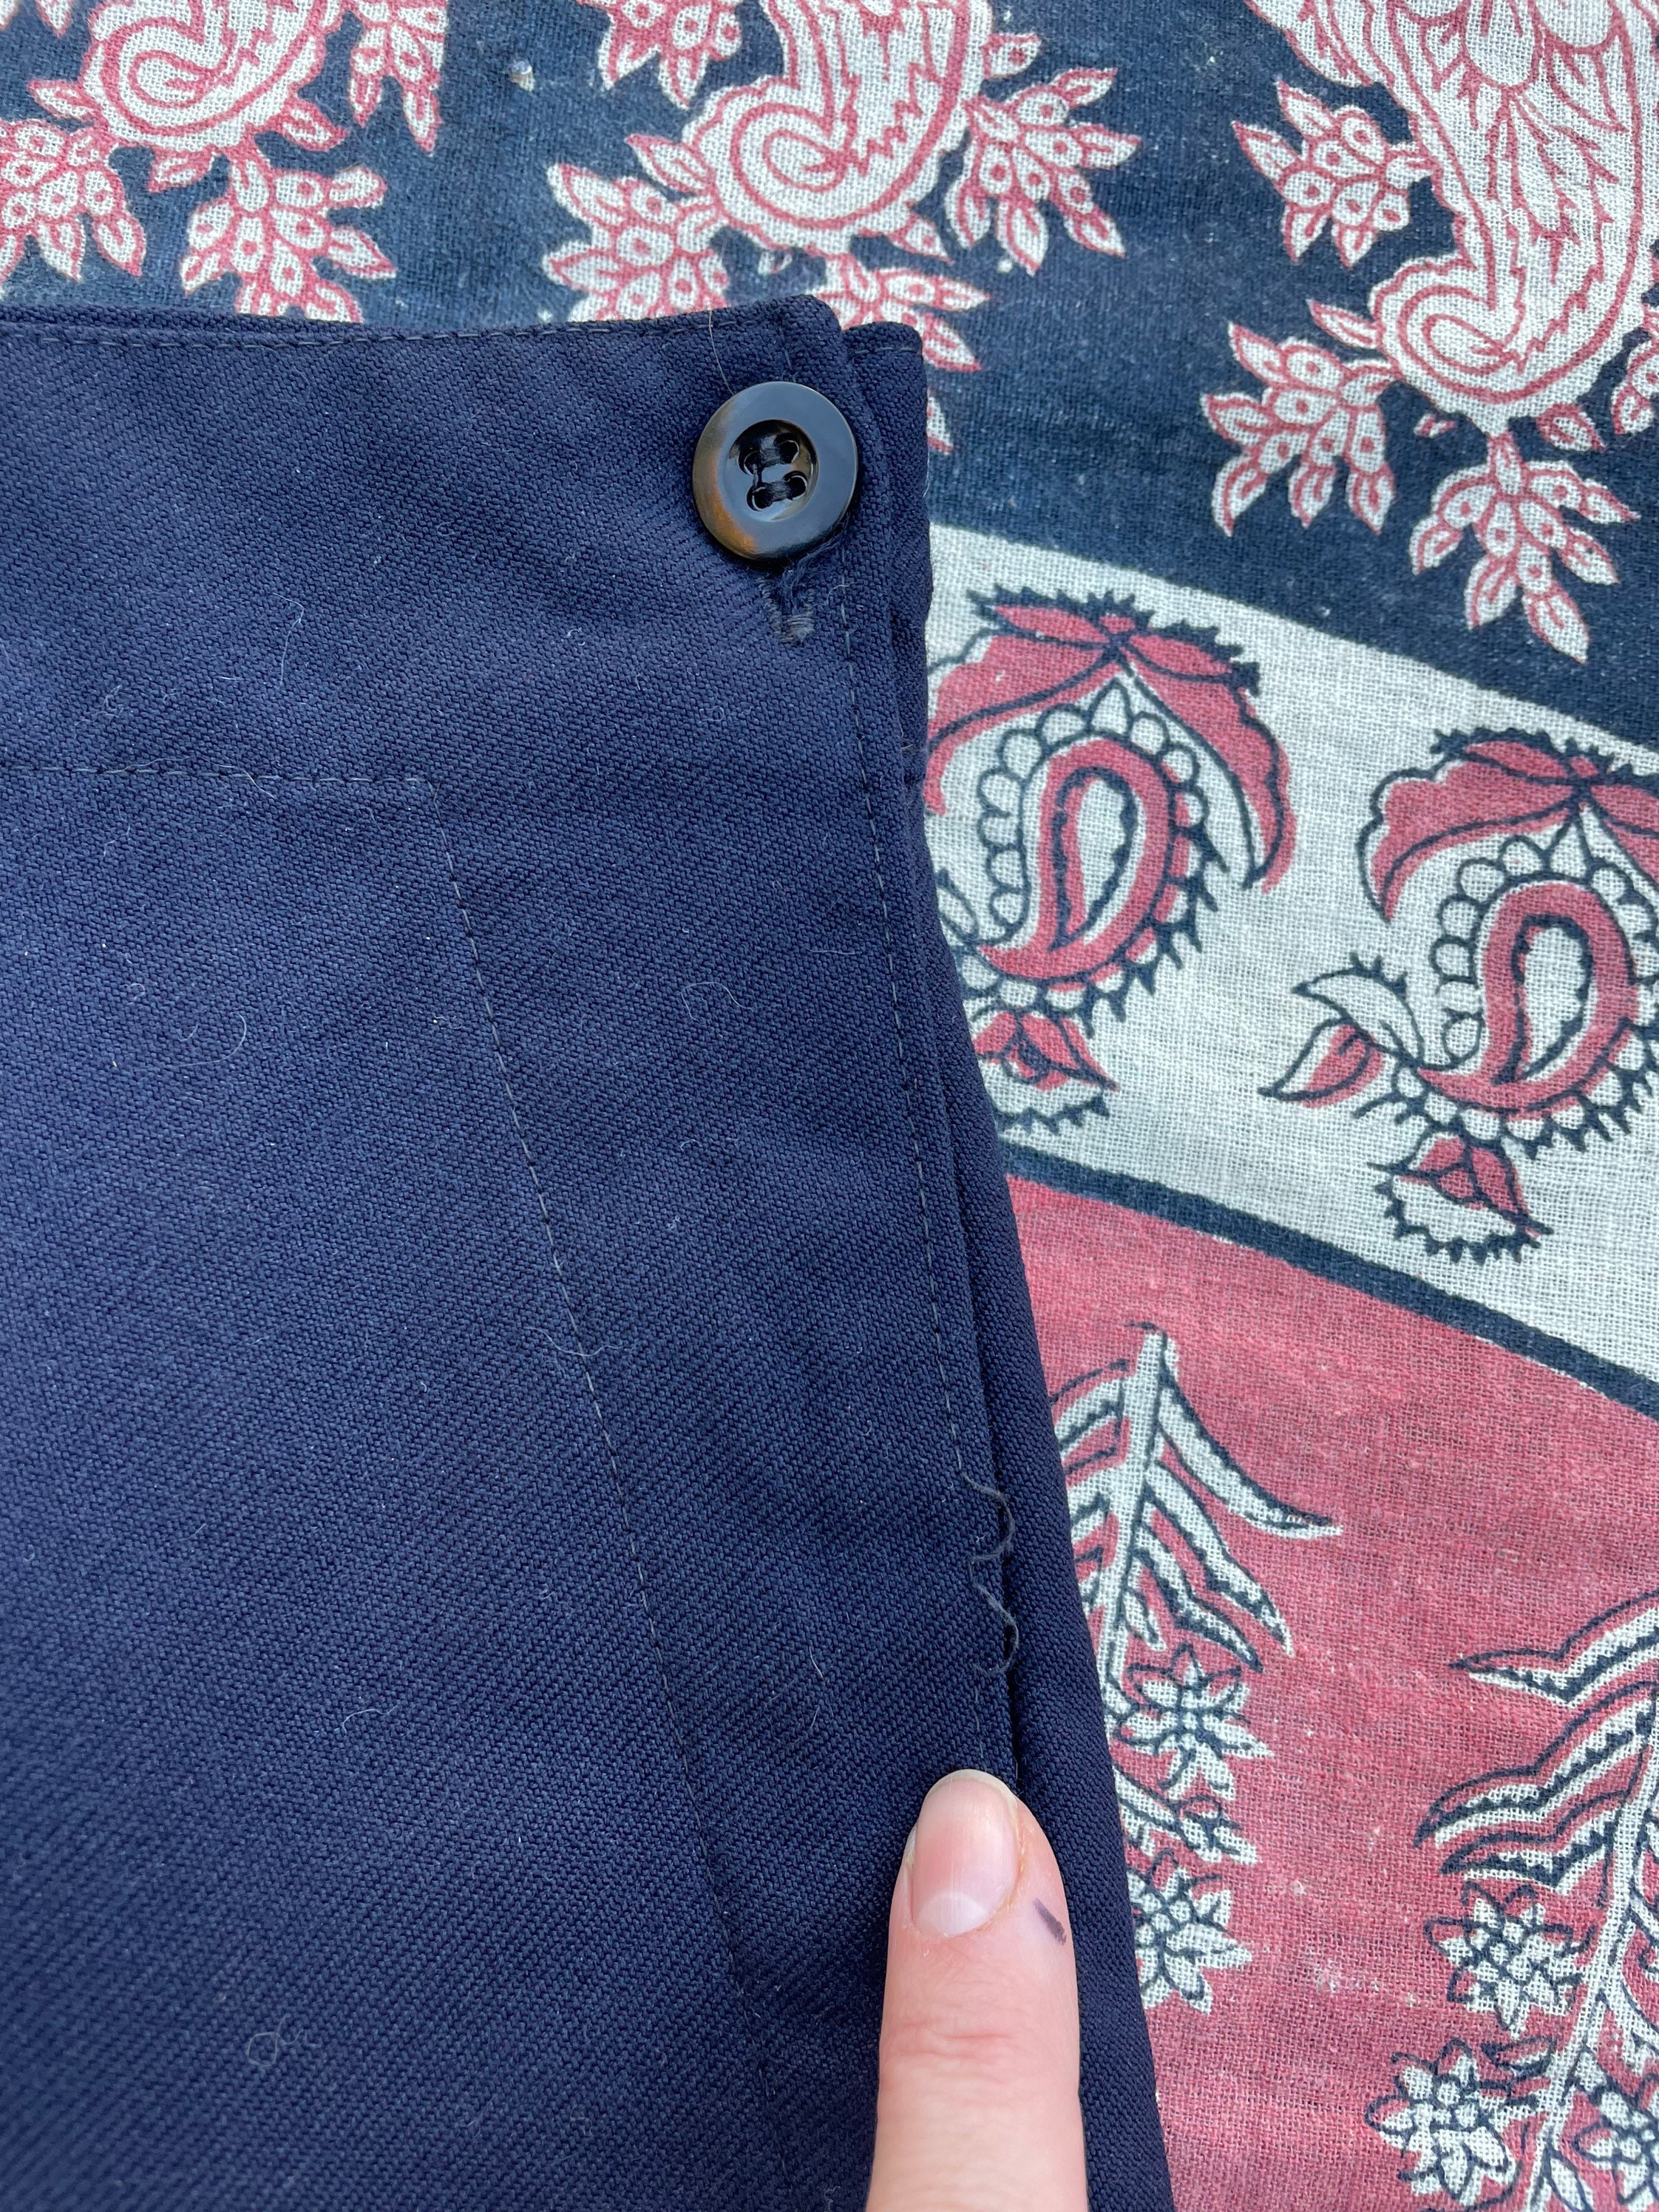 Vintage 70s Navy Blue Wool Sailor Pants Button Bib Front US 